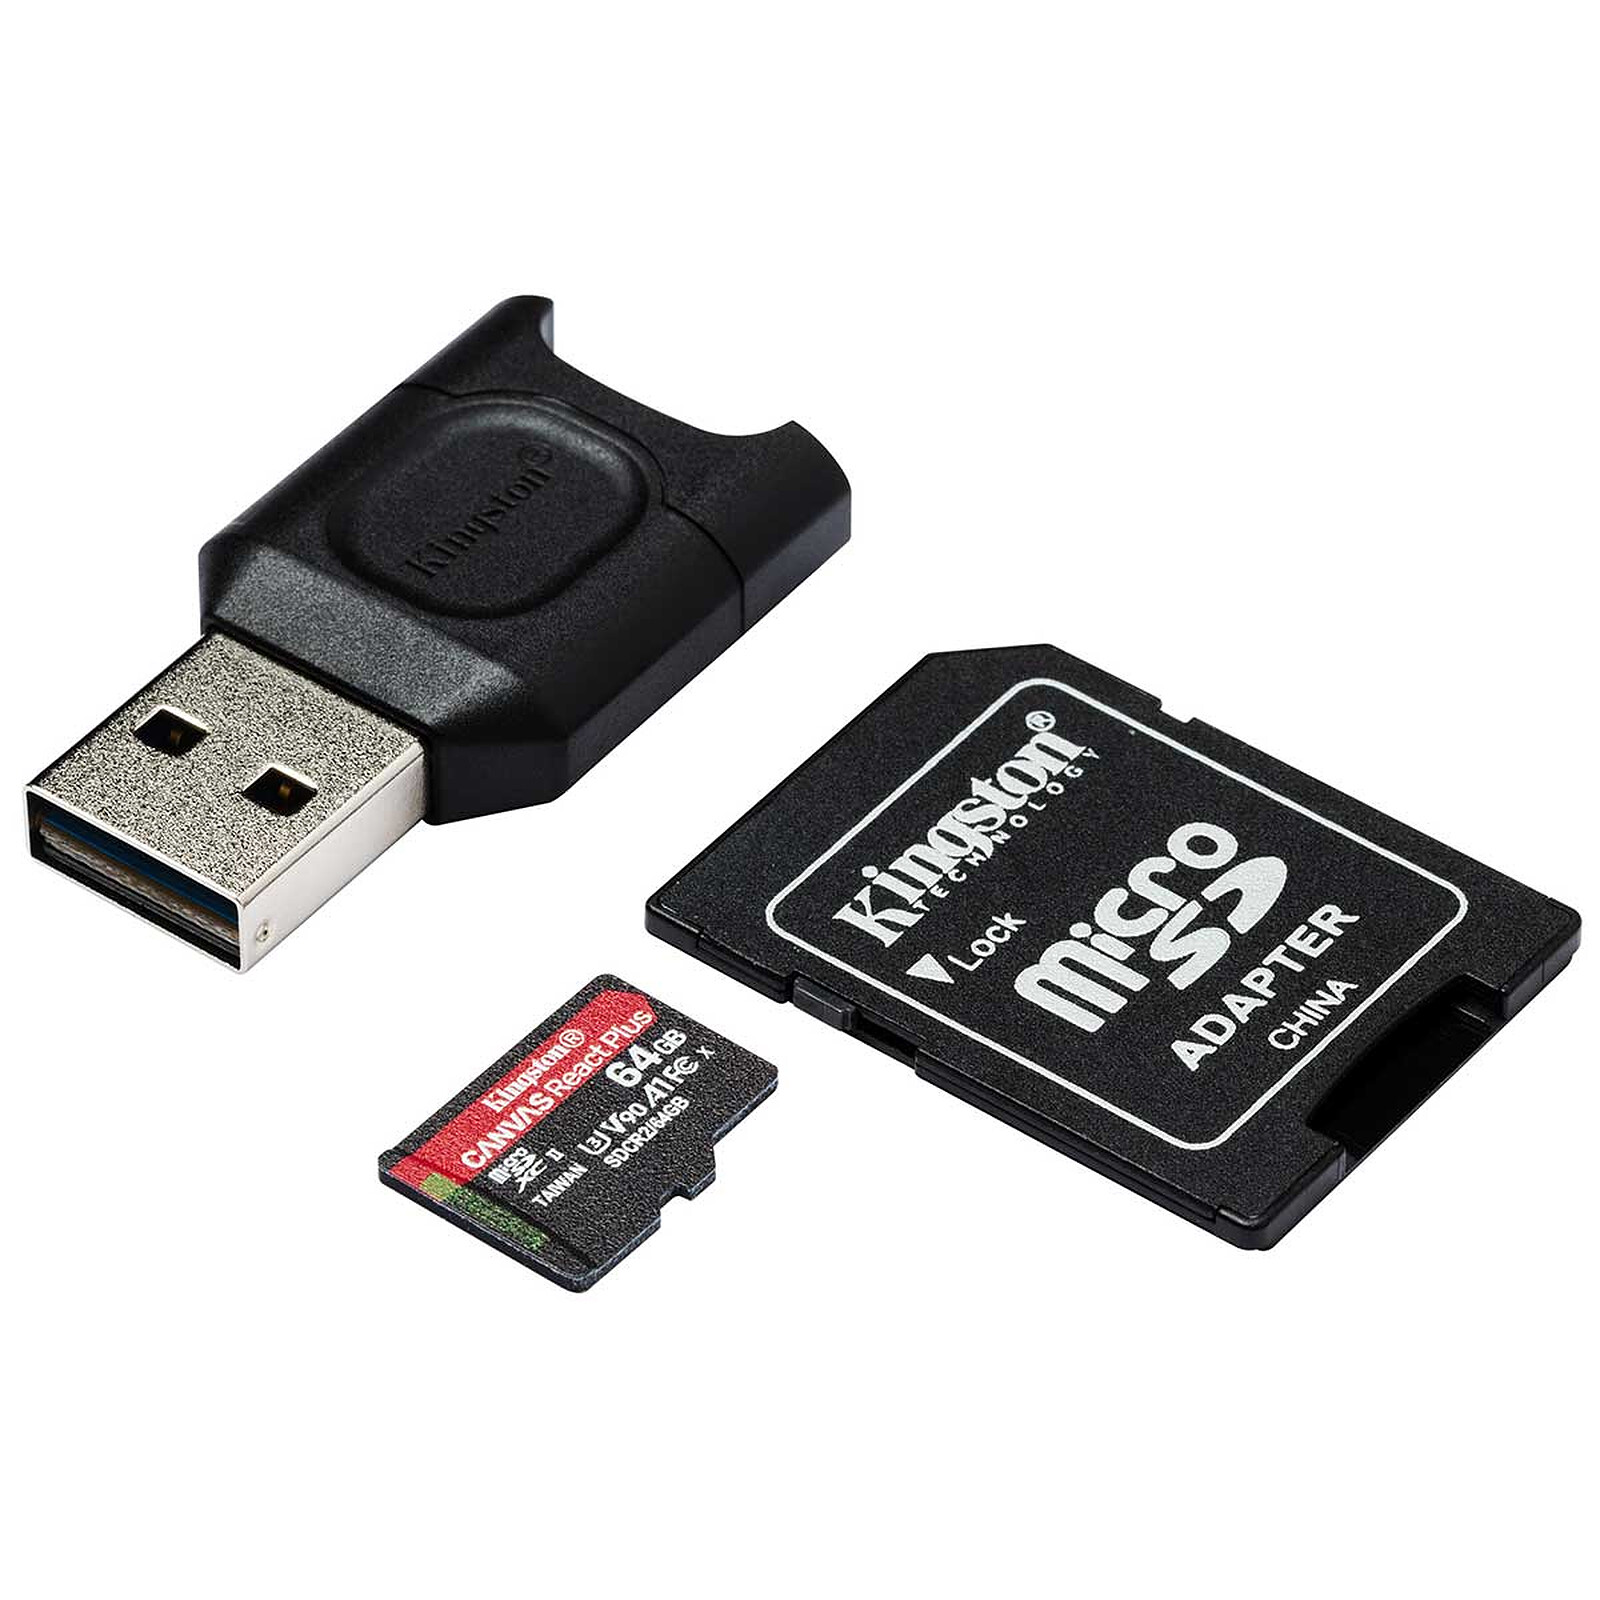 Carte mémoire Secure Digital (SD) Kingston Canvas Select 512 Go SDXC Class  10 avec adaptateur - La Poste